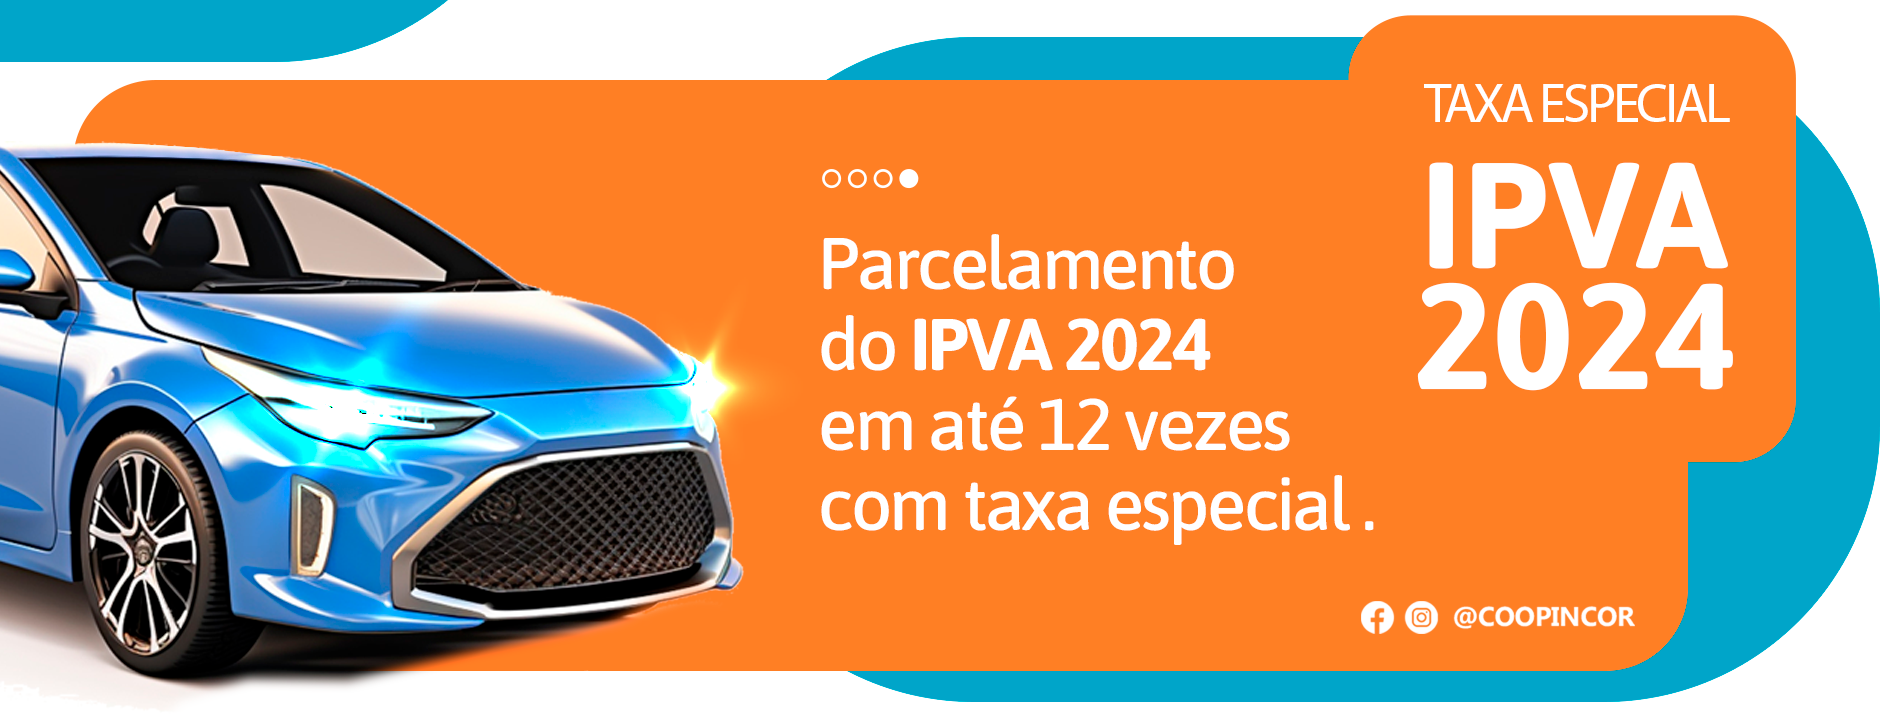 IPVA2024